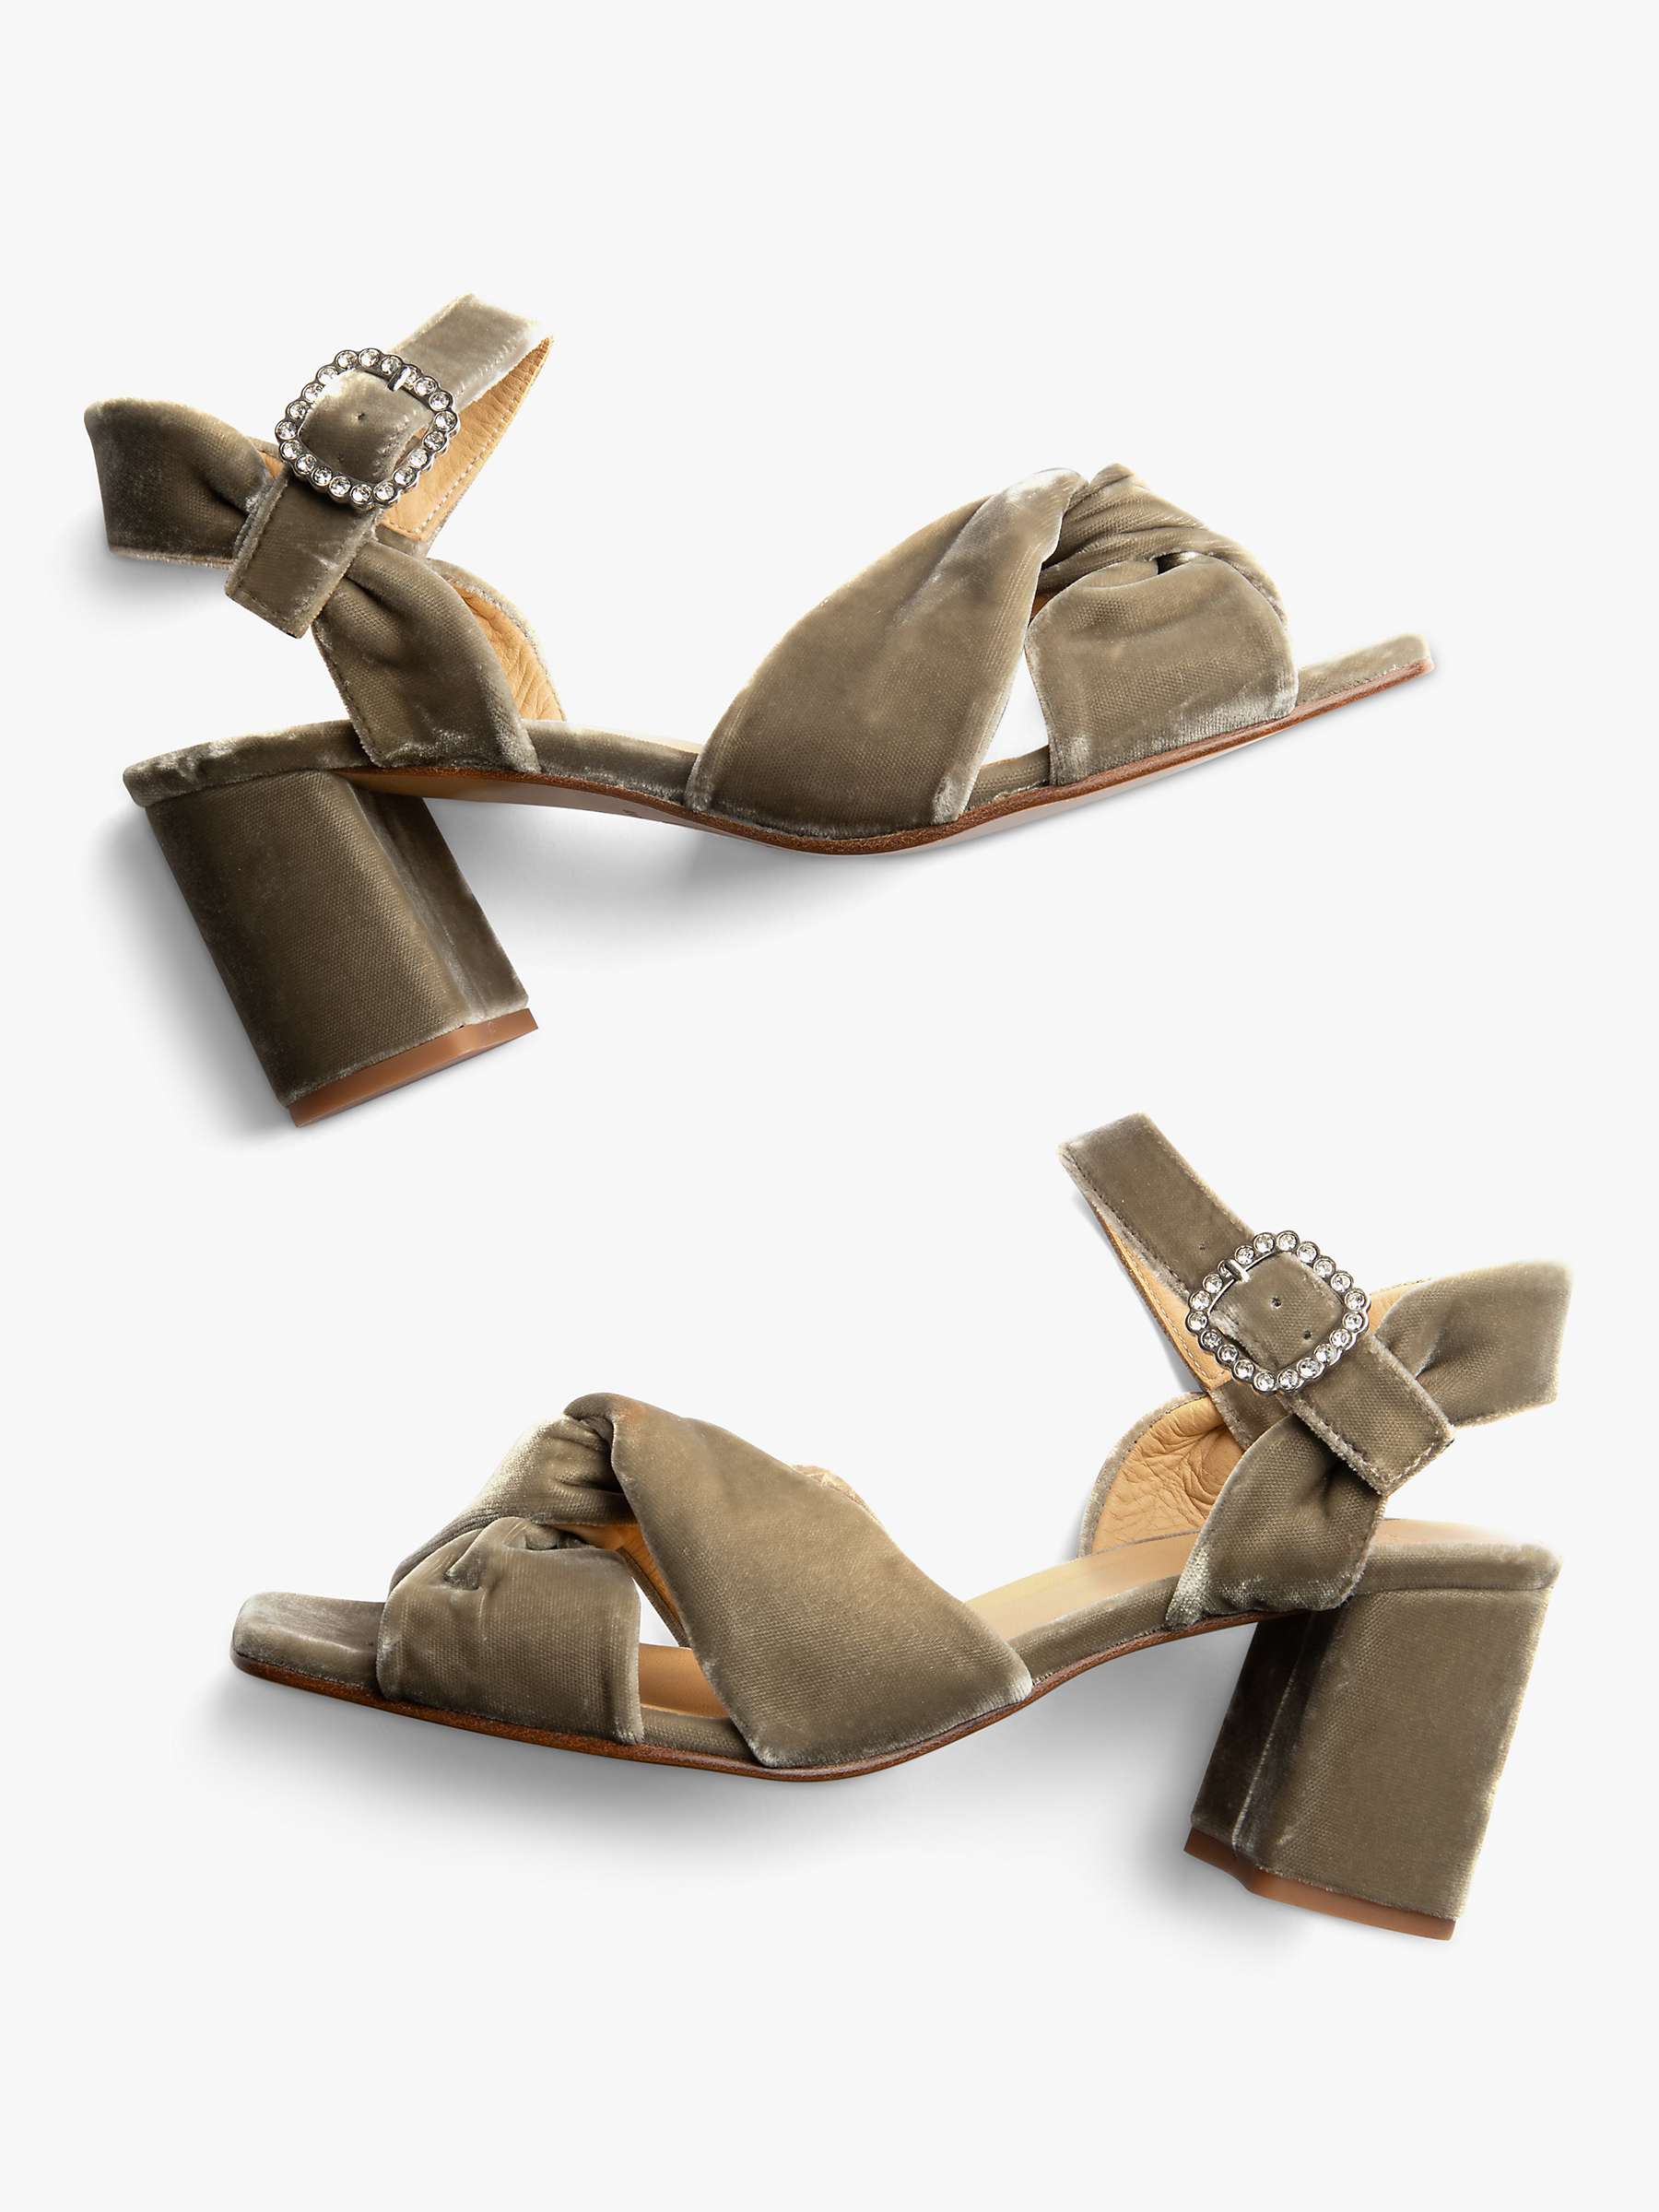 Buy Penelope Chilvers Infinity Velvet Block Heel Sandals, Putty Online at johnlewis.com